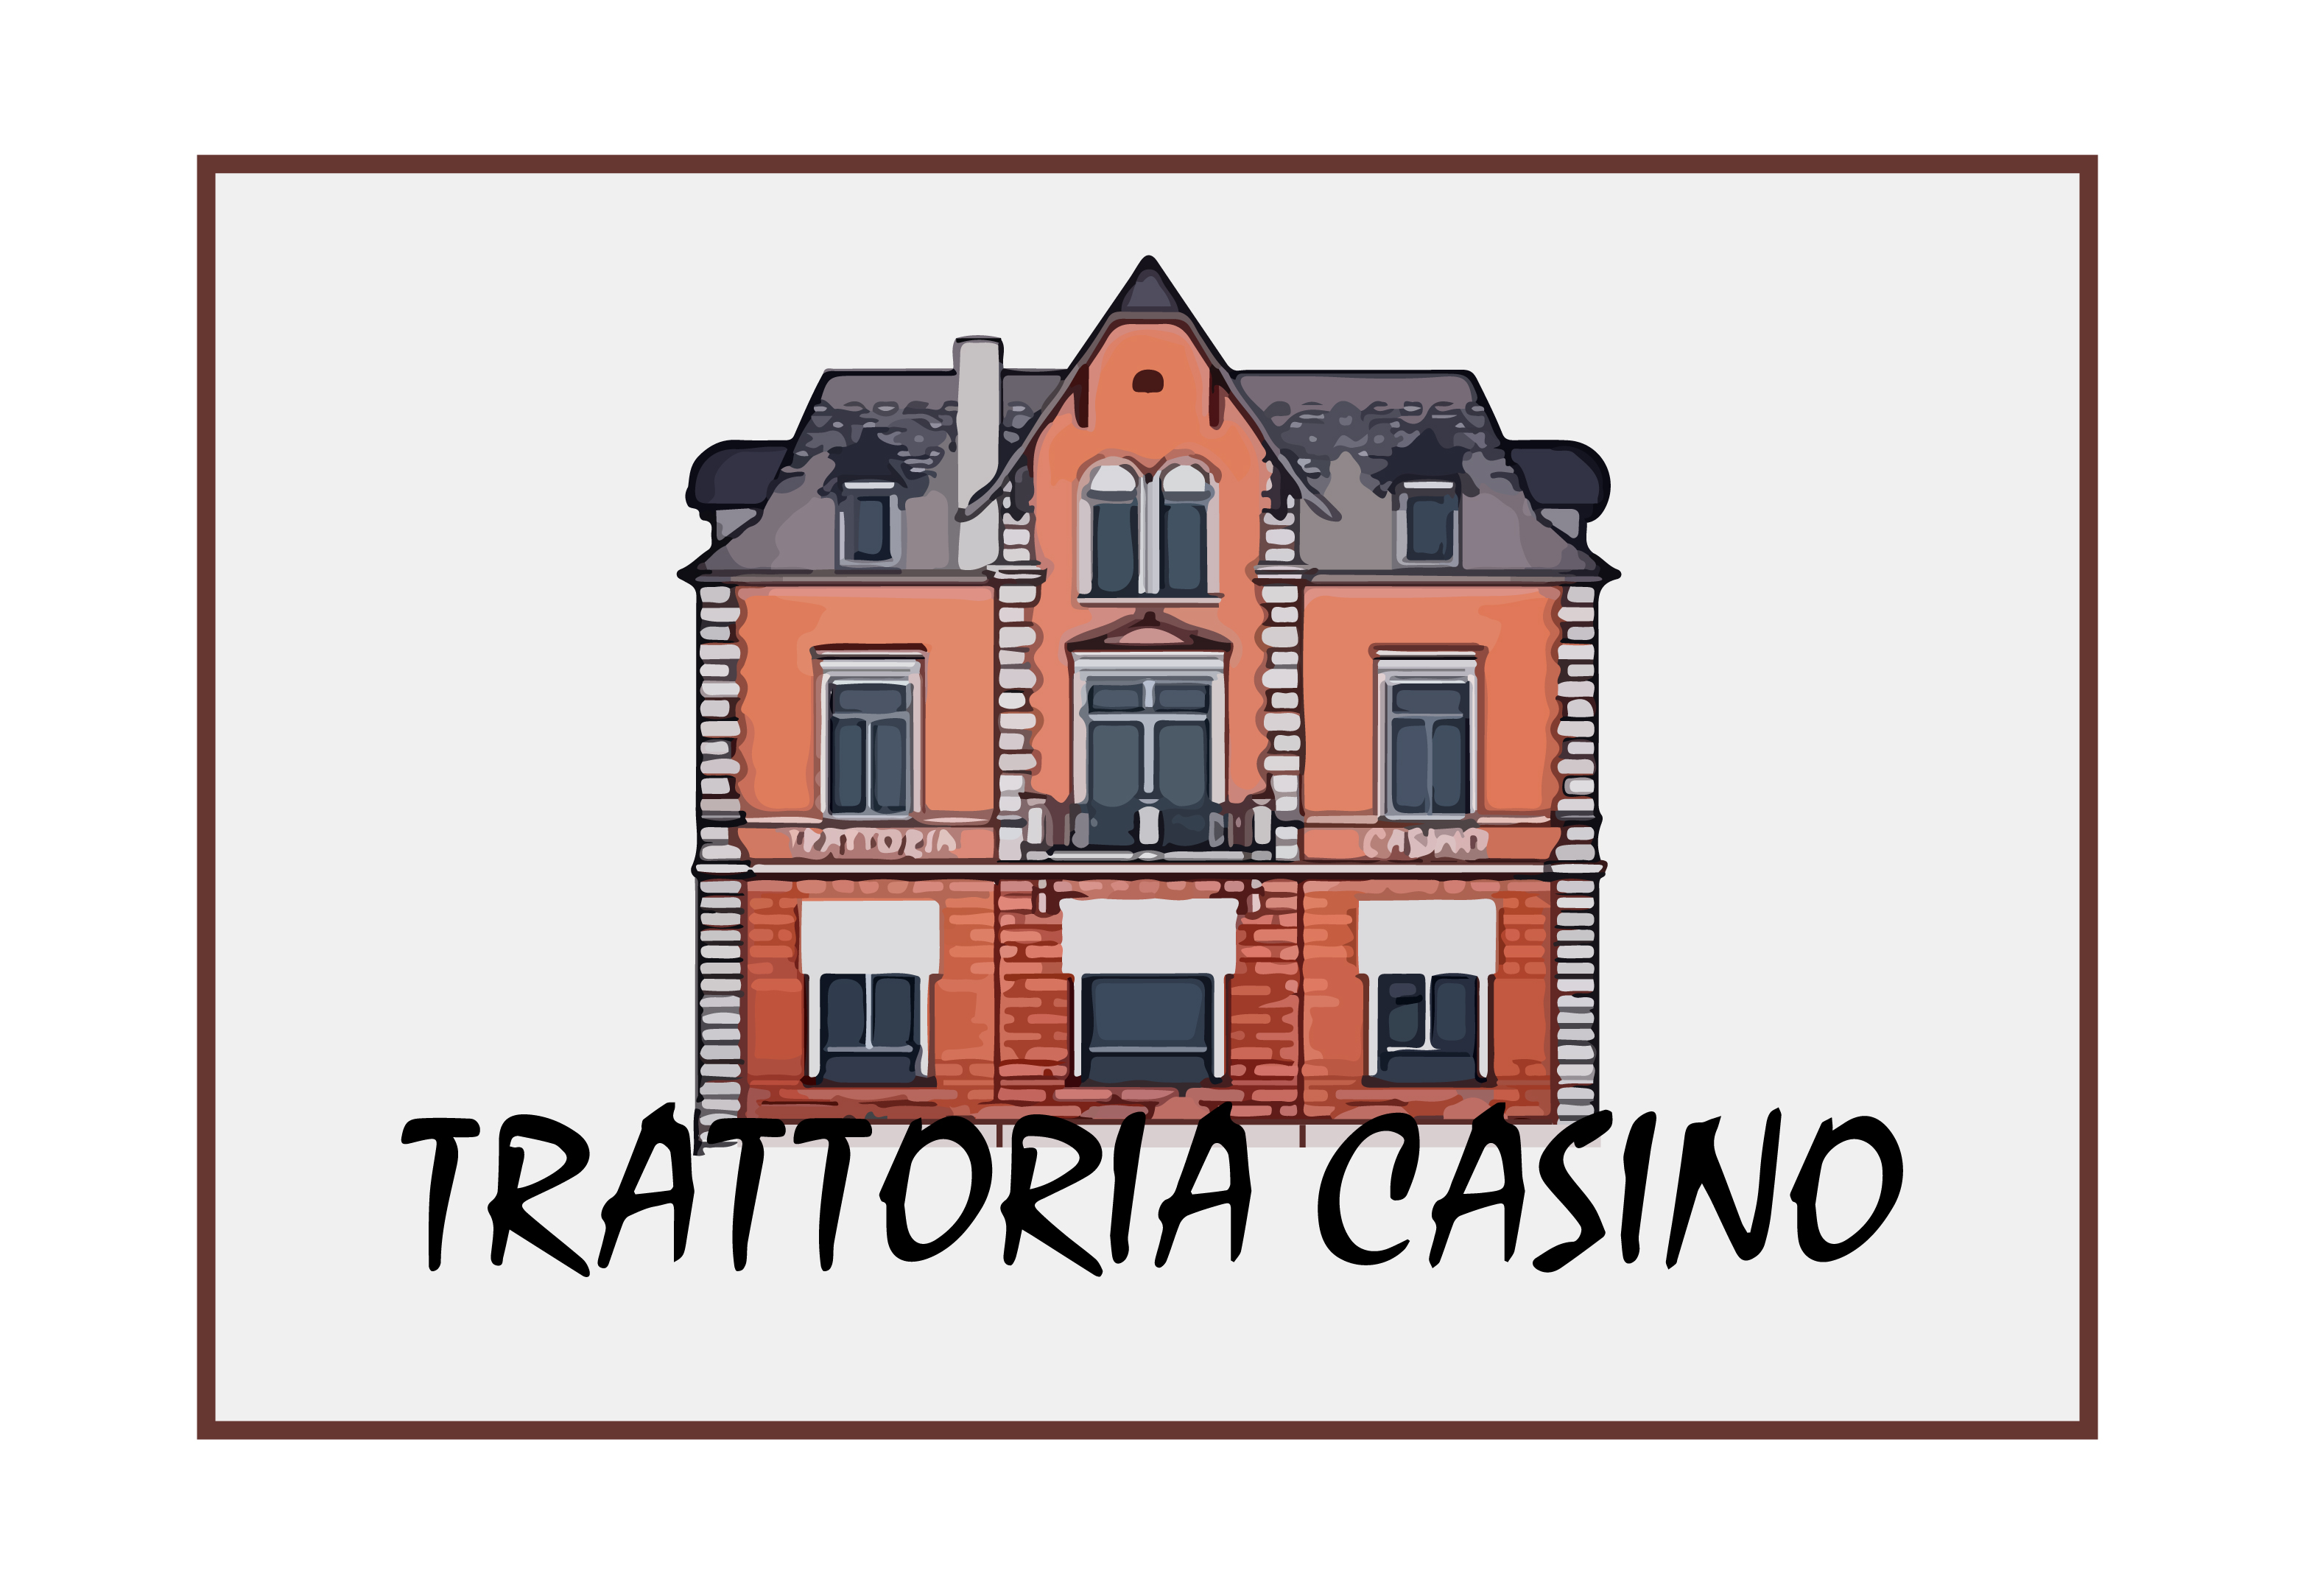 Trattoria Casino